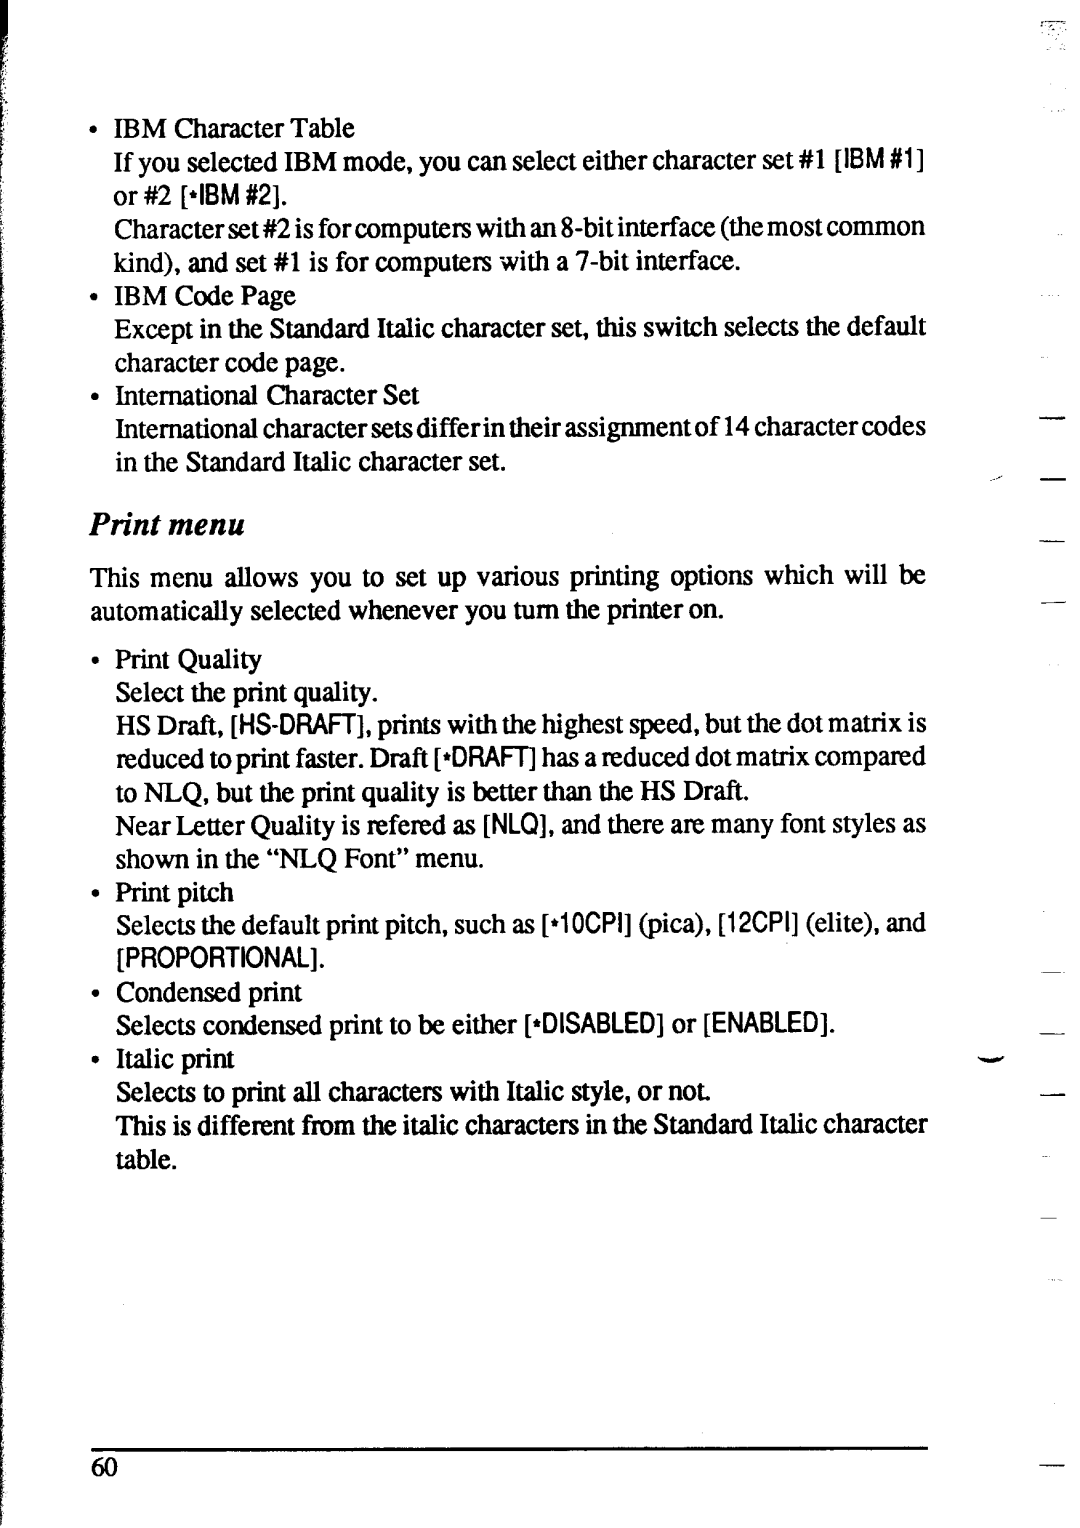 Star Micronics XR-1020, XR-1520 manual Print menu 